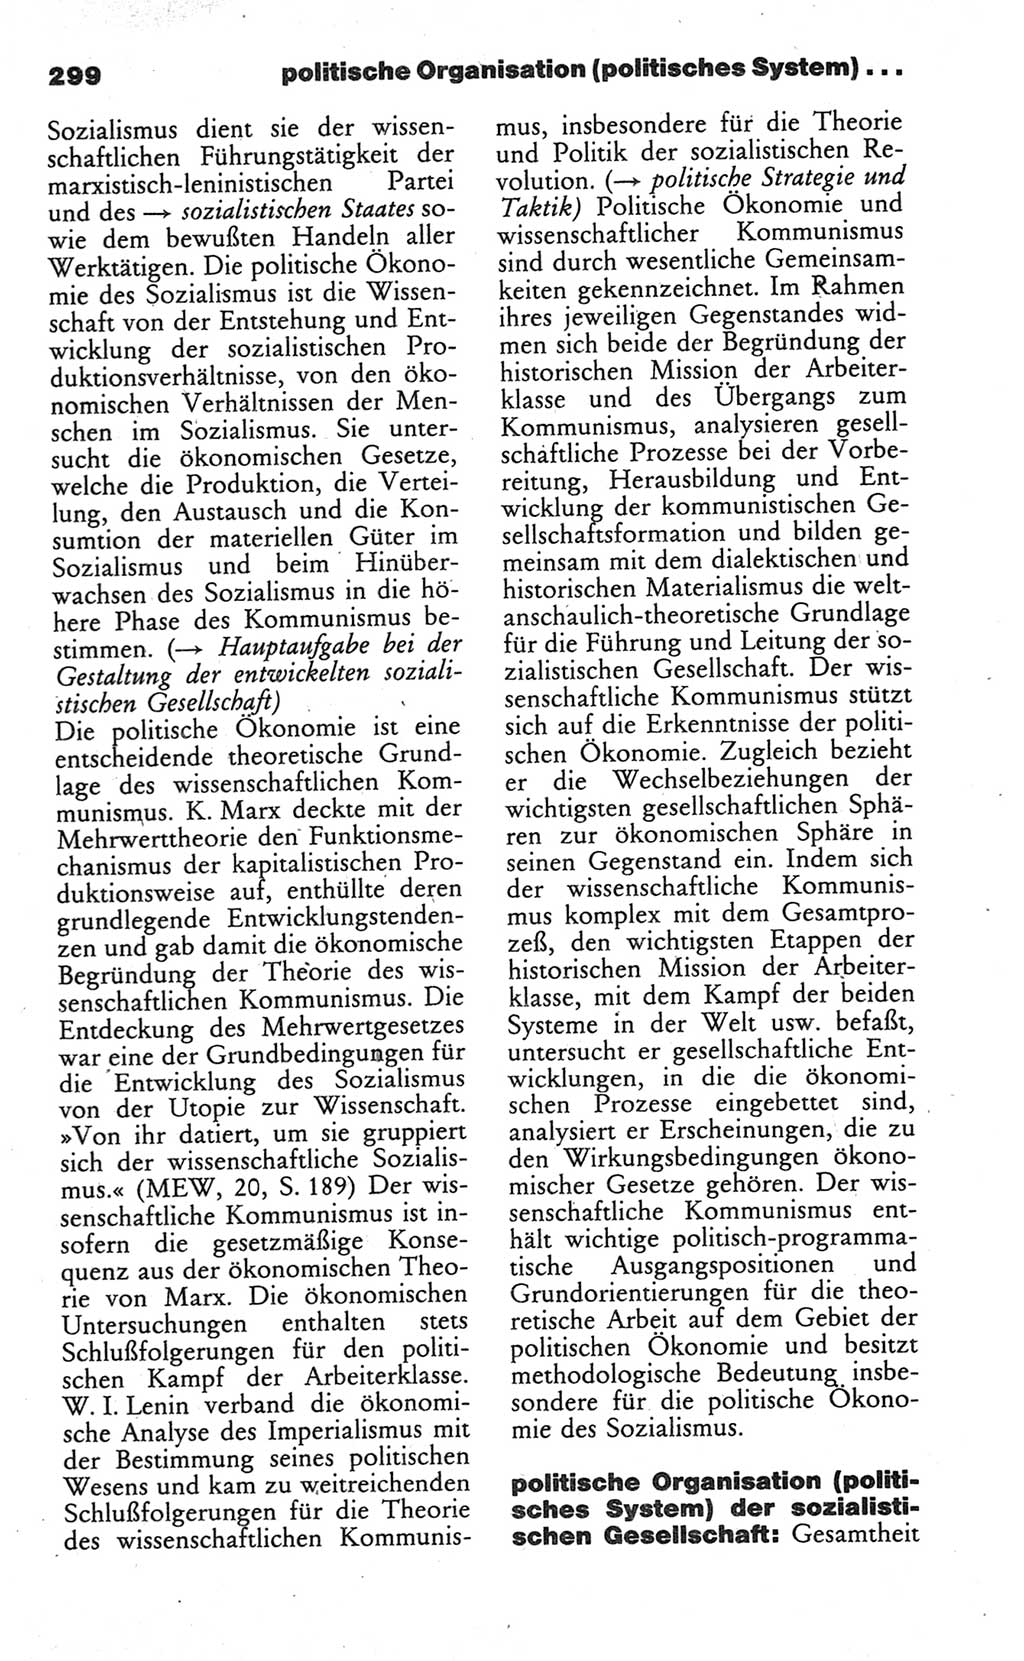 Wörterbuch des wissenschaftlichen Kommunismus [Deutsche Demokratische Republik (DDR)] 1984, Seite 299 (Wb. wiss. Komm. DDR 1984, S. 299)